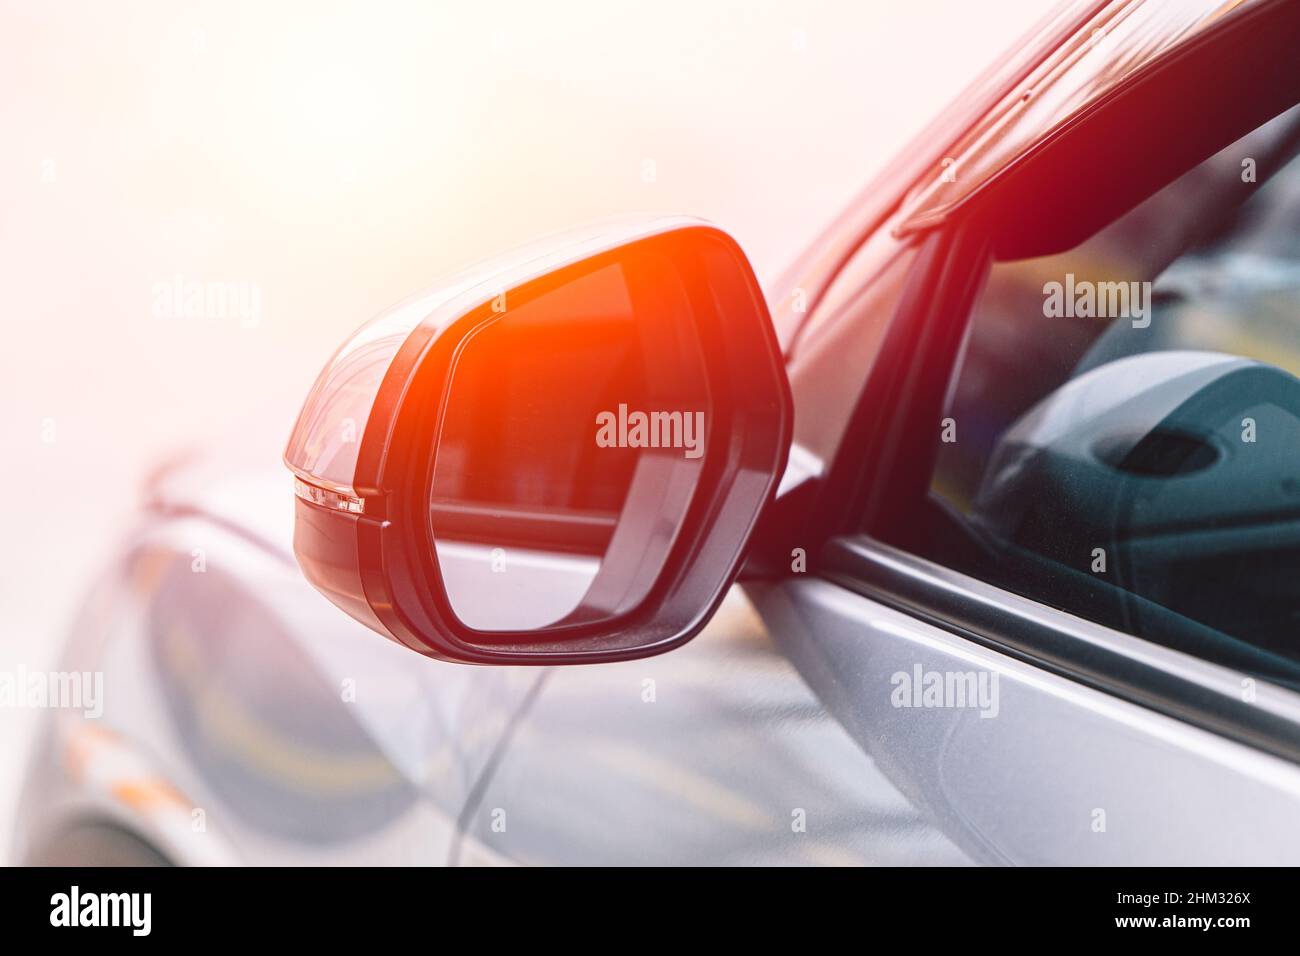 specchietto retrovisore lato auto o retrovisore esterno per guardare il conducente dietro la visuale posteriore Foto Stock